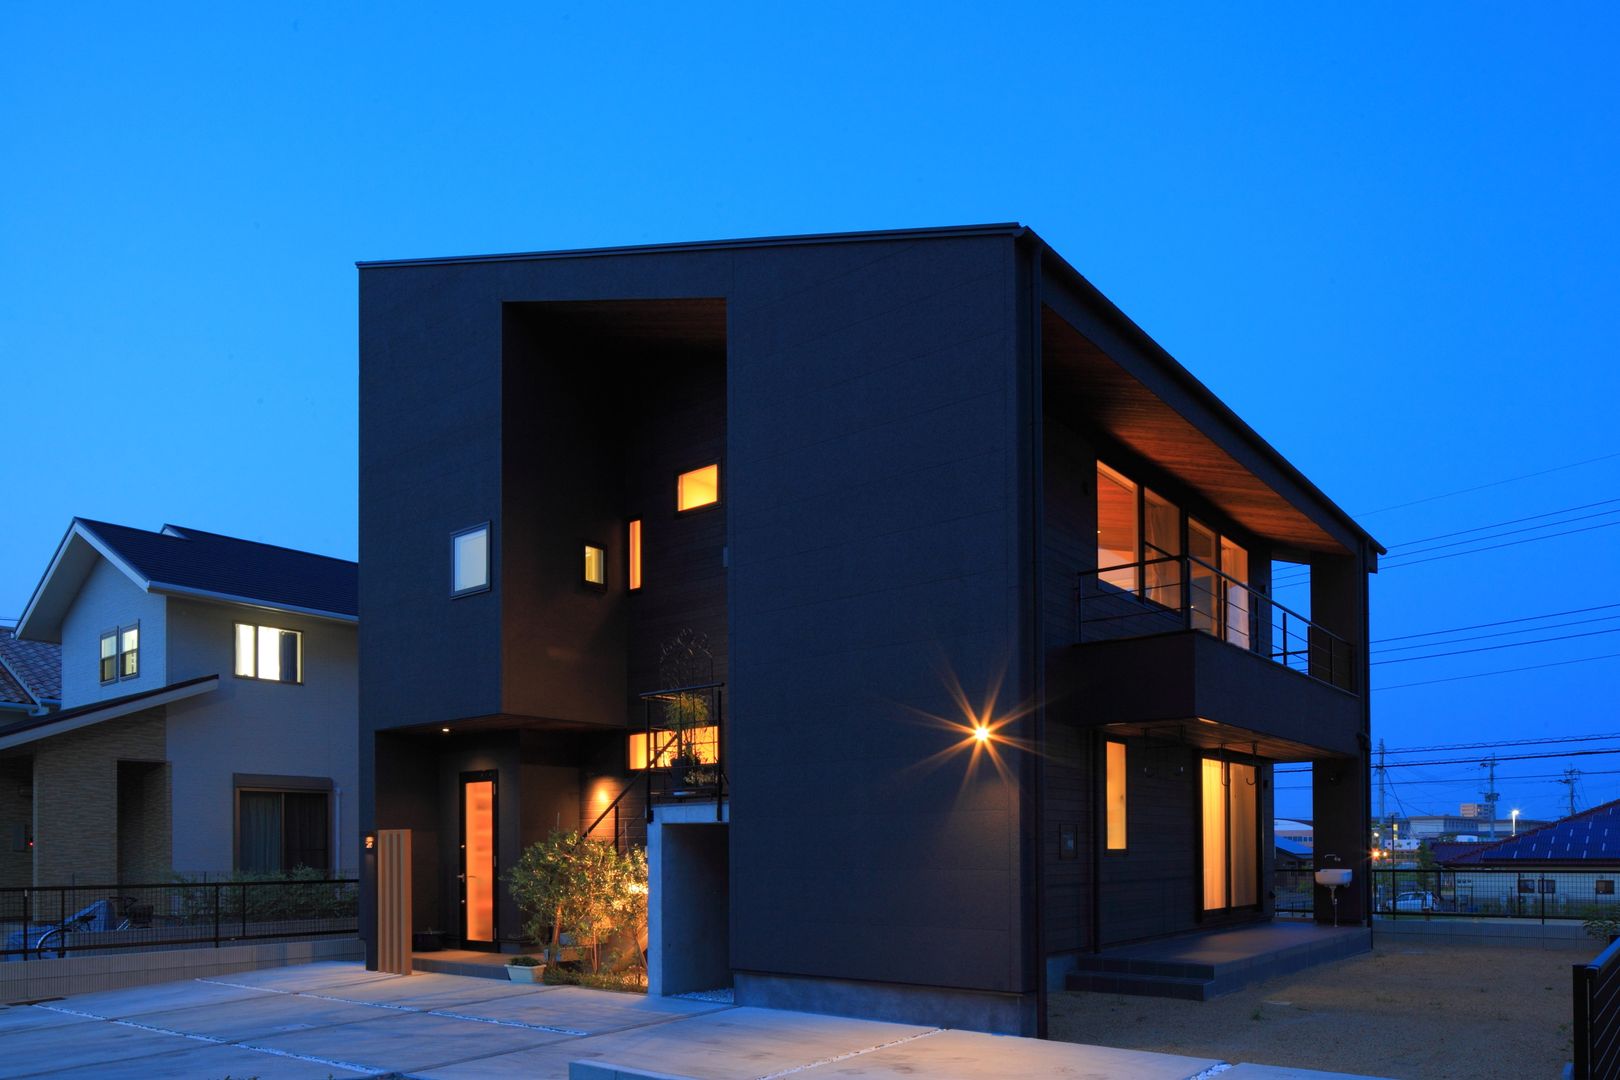 KTF House , artect design - アルテクト デザイン artect design - アルテクト デザイン 房子